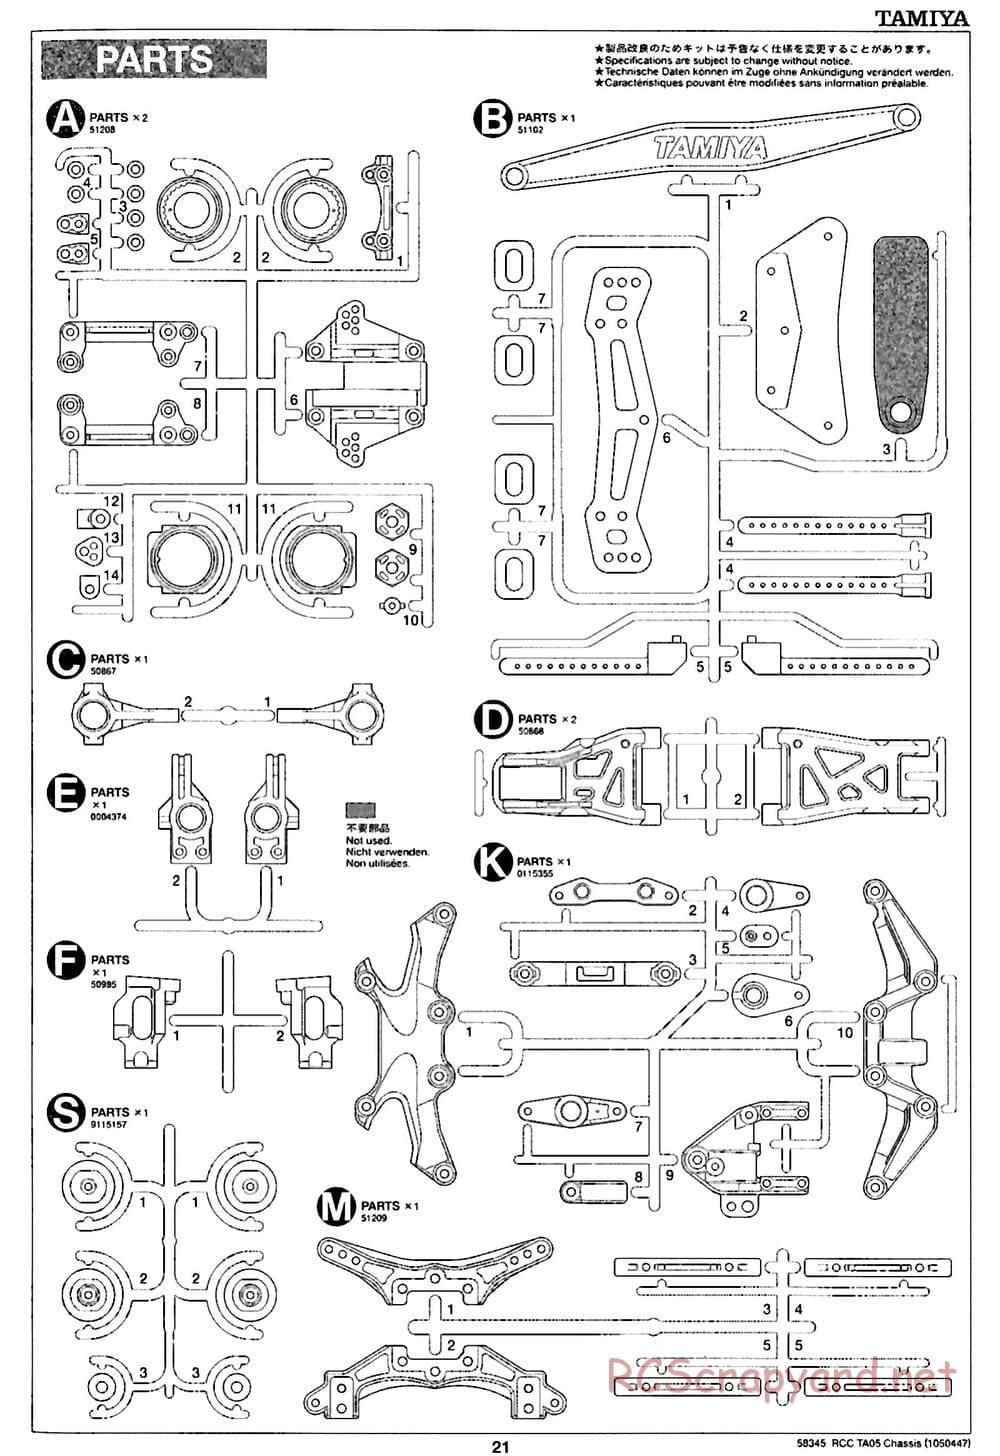 Tamiya - TA05 Chassis - Manual - Page 21